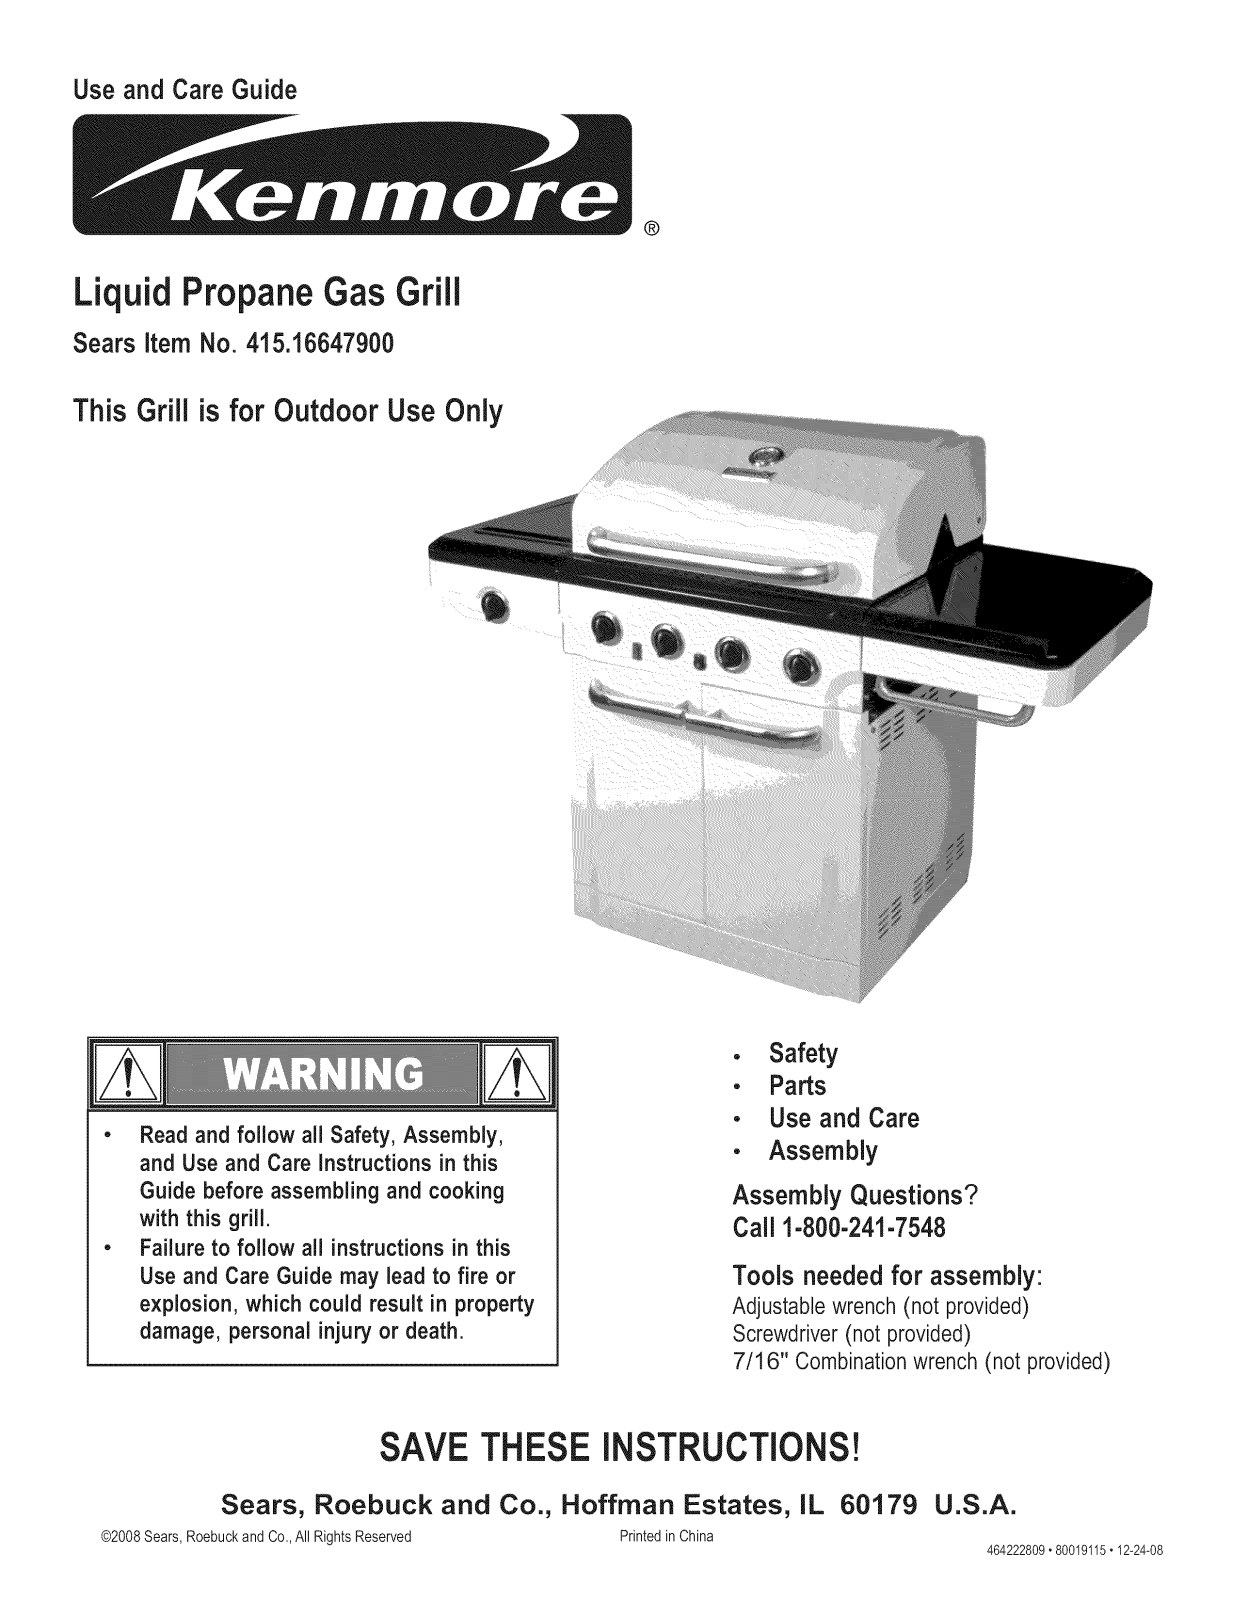 Kenmore 41516647900 Owner’s Manual